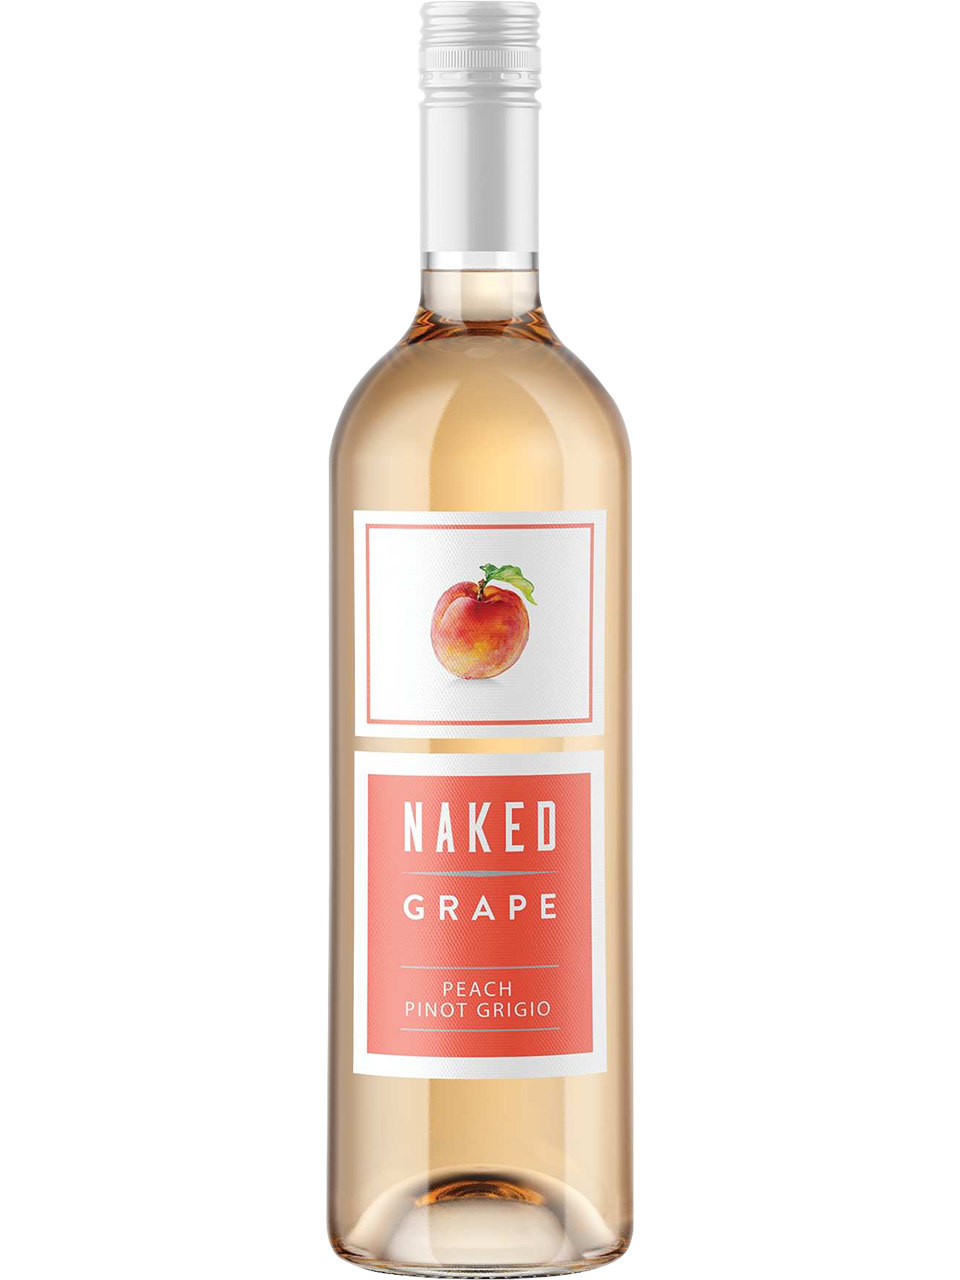 Naked Grape Peach Pinot Grigio